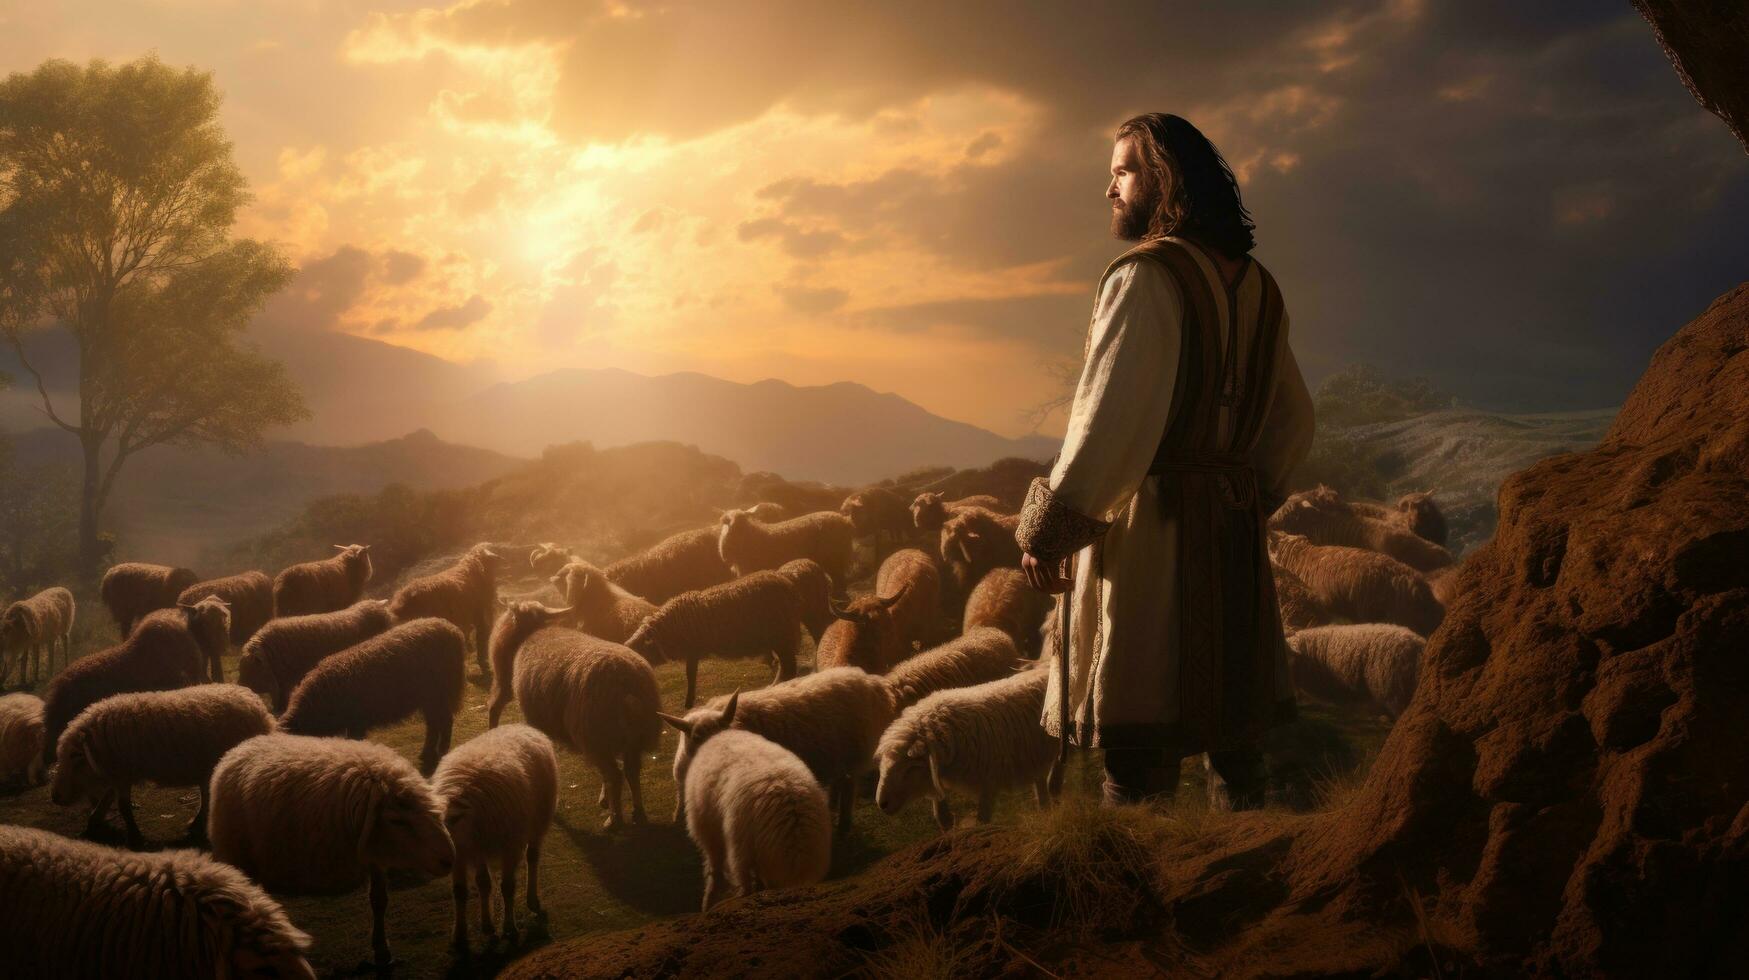 Jesús pastorear el oveja en noche cielo foto